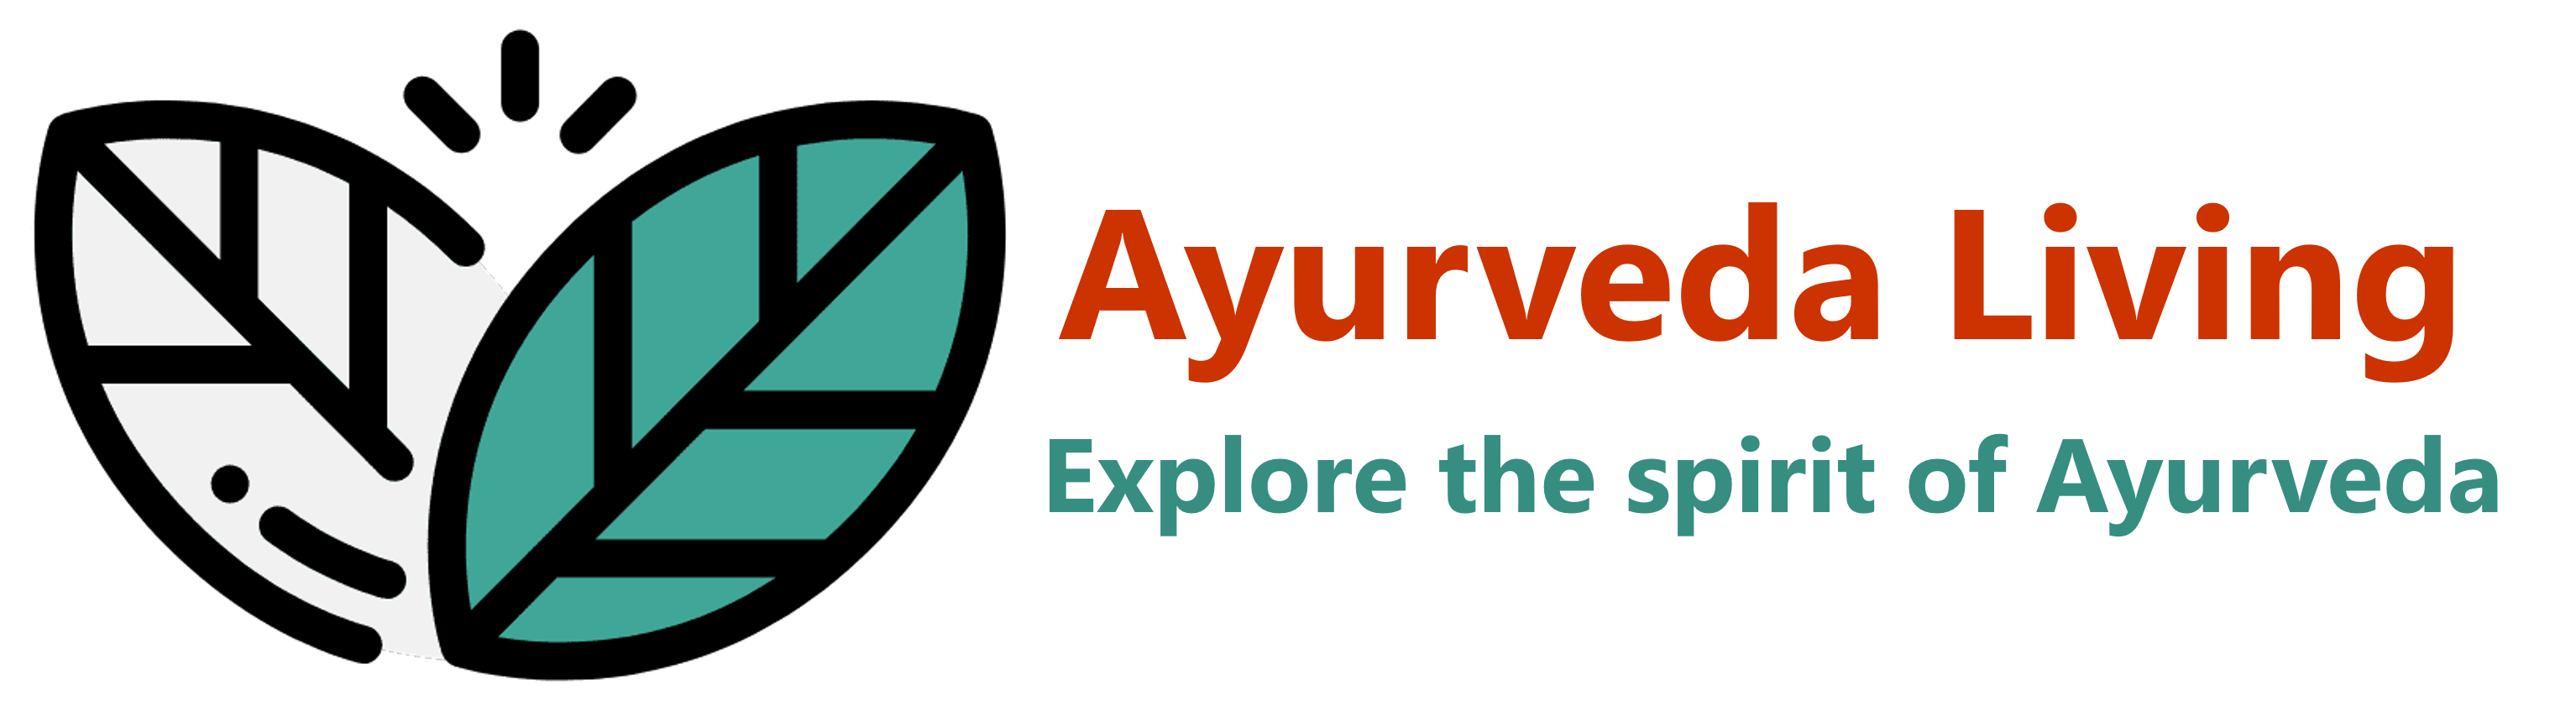 Ayurveda Living